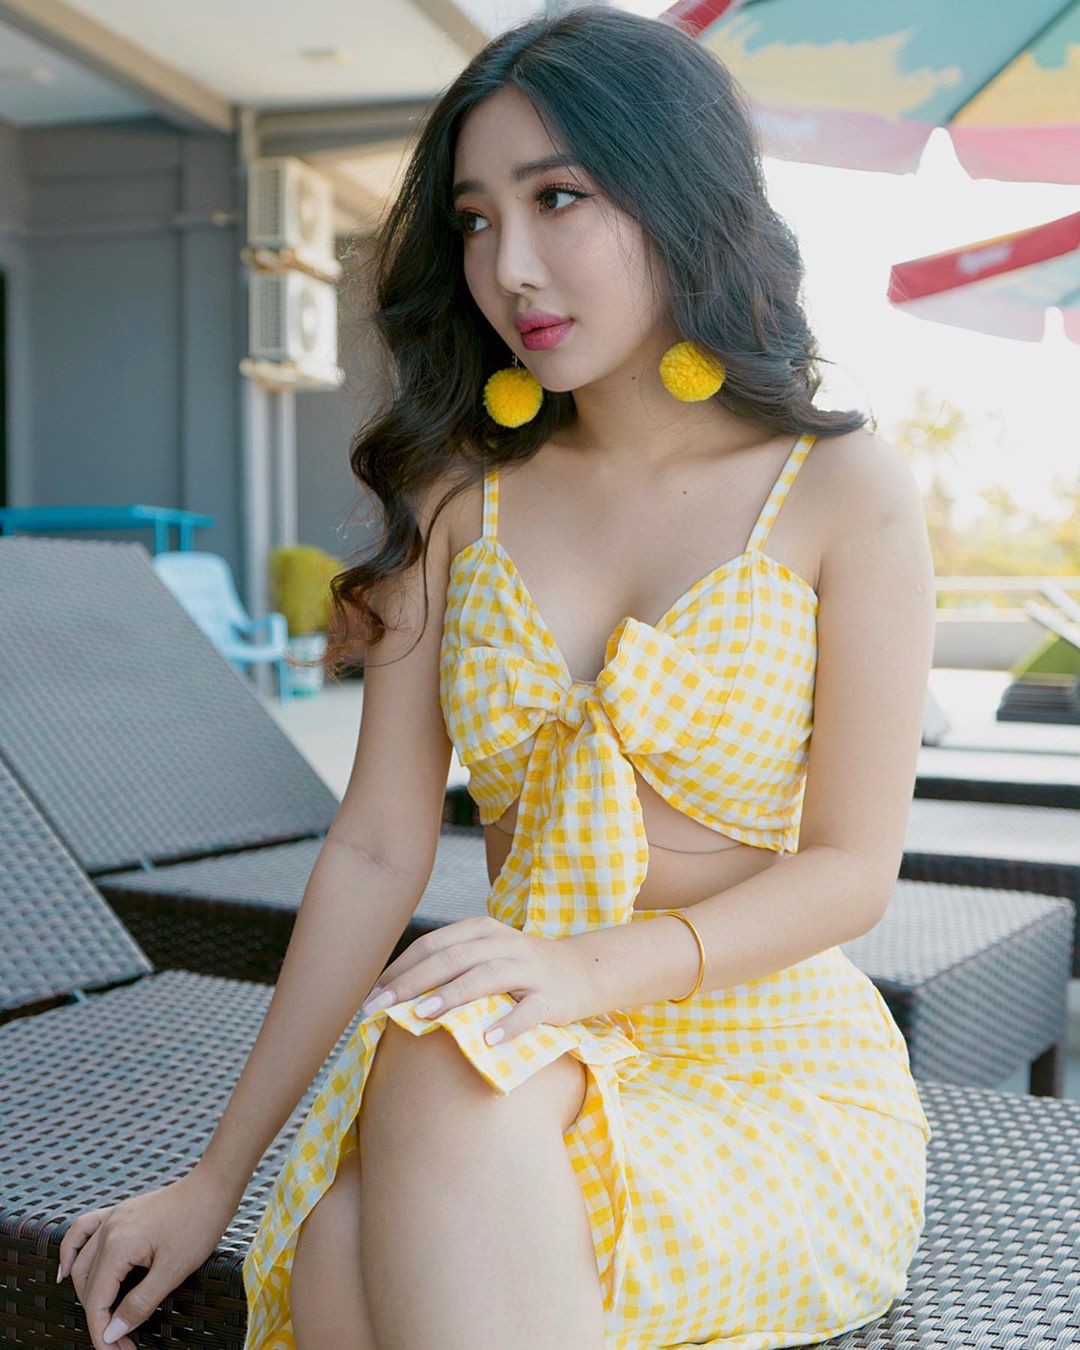 yellow matching dress with bikini, female thighs, hot legs picture: Gravure idol,  Instagram girls,  Yellow Bikini  